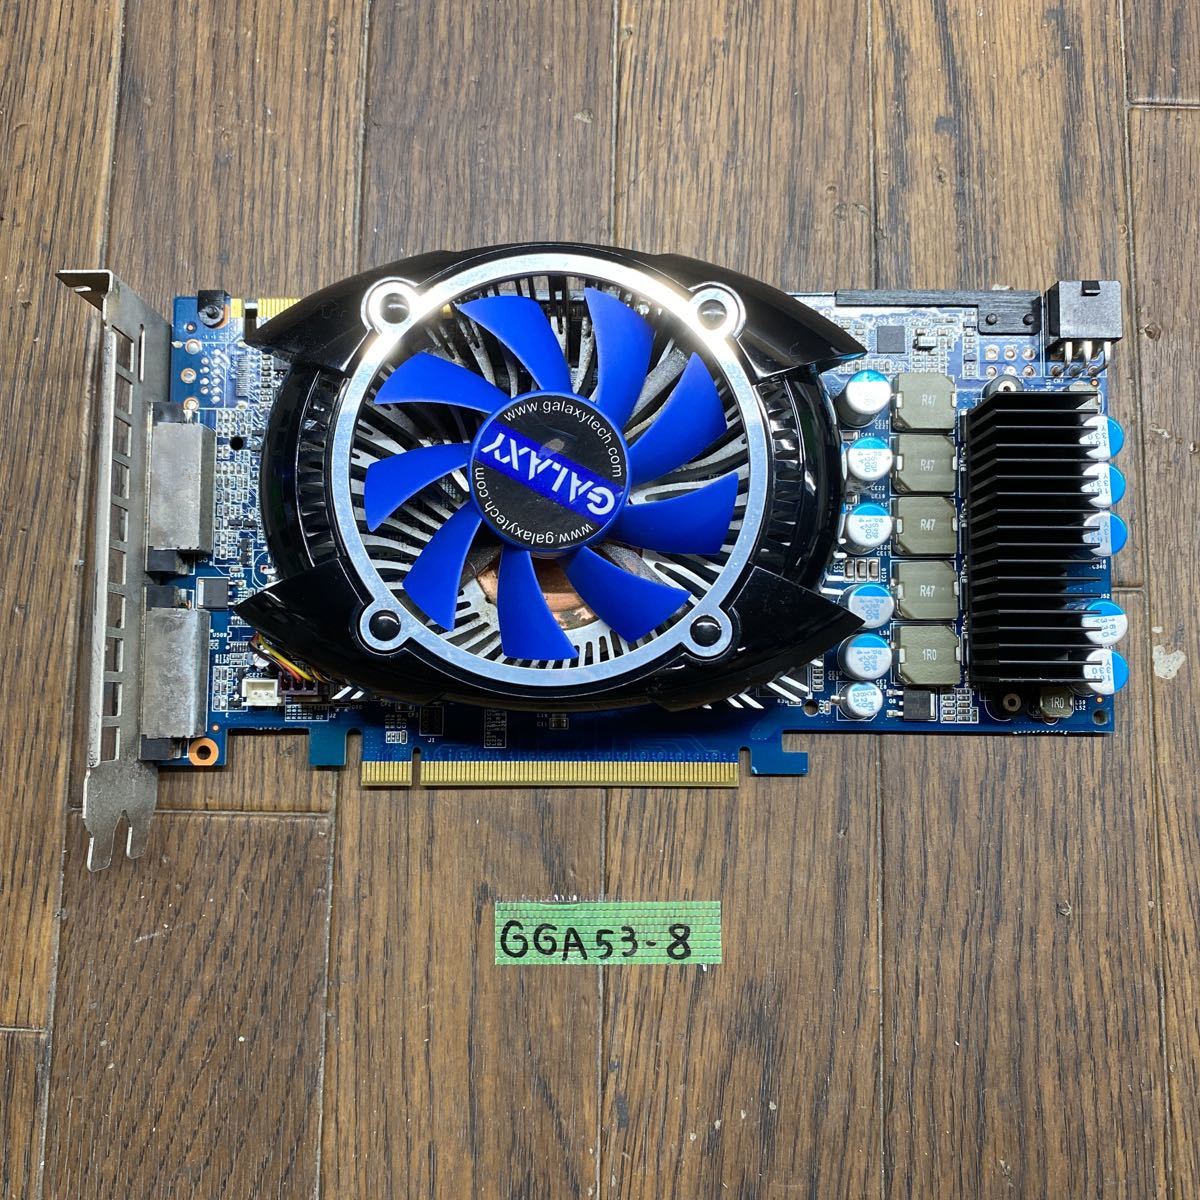 GGA53-8 激安 グラフィックボード GALAXY GeForce GTS250 PCI-E 512MB DVI 【アウトレット送料無料】 256Bit 同梱可能 w 認識.画像出力のみ確認 最新作の DDR3 Dual 中古